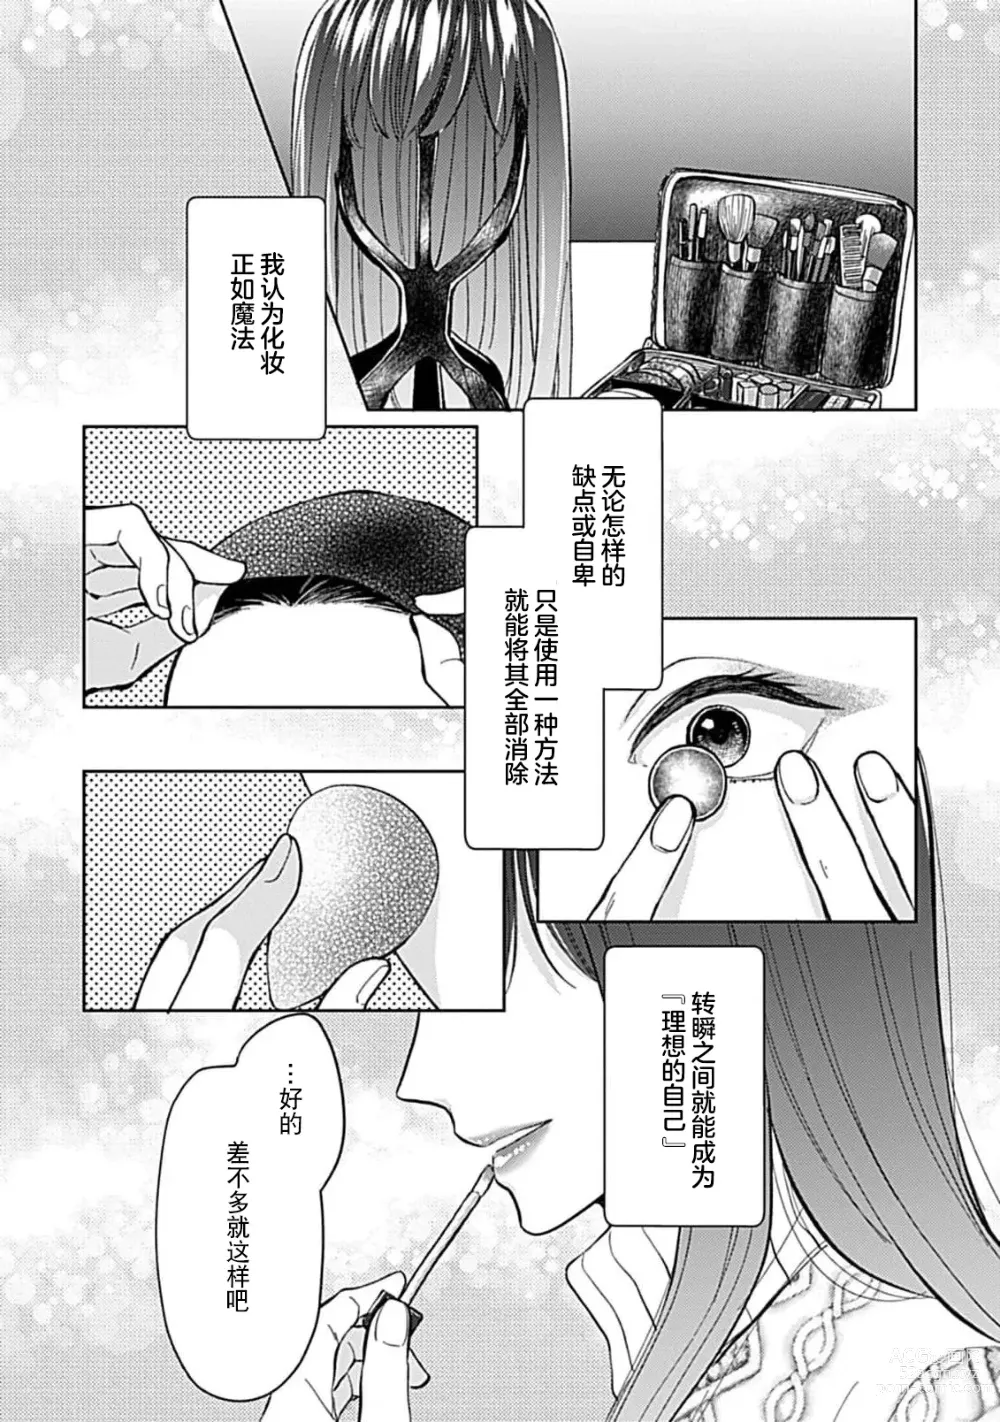 Page 5 of manga 恋情与秘密难以映照 1